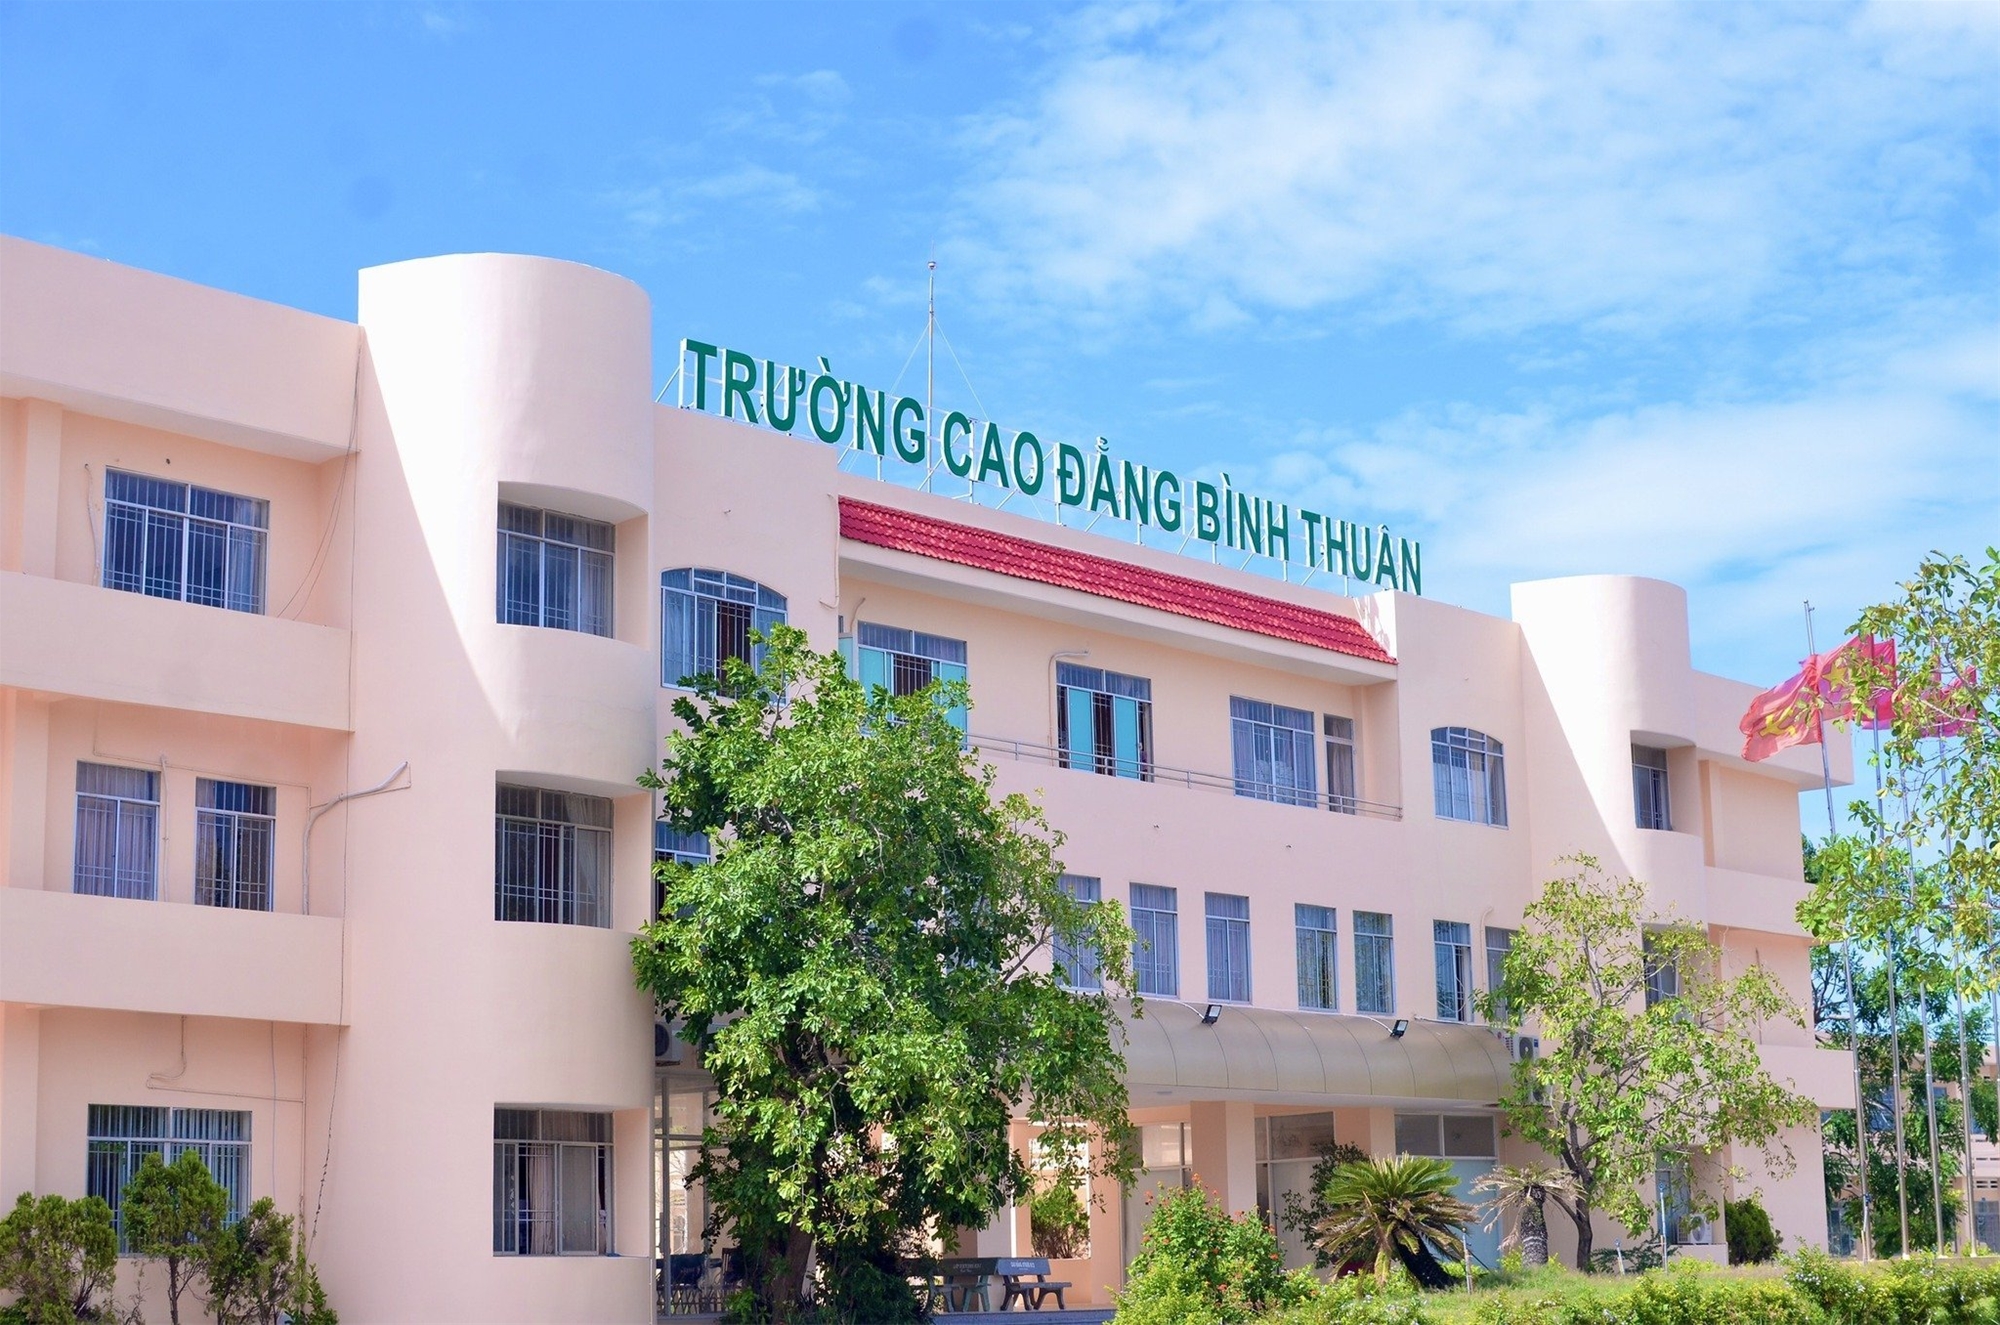 Trường cao đẳng Bình Thuận